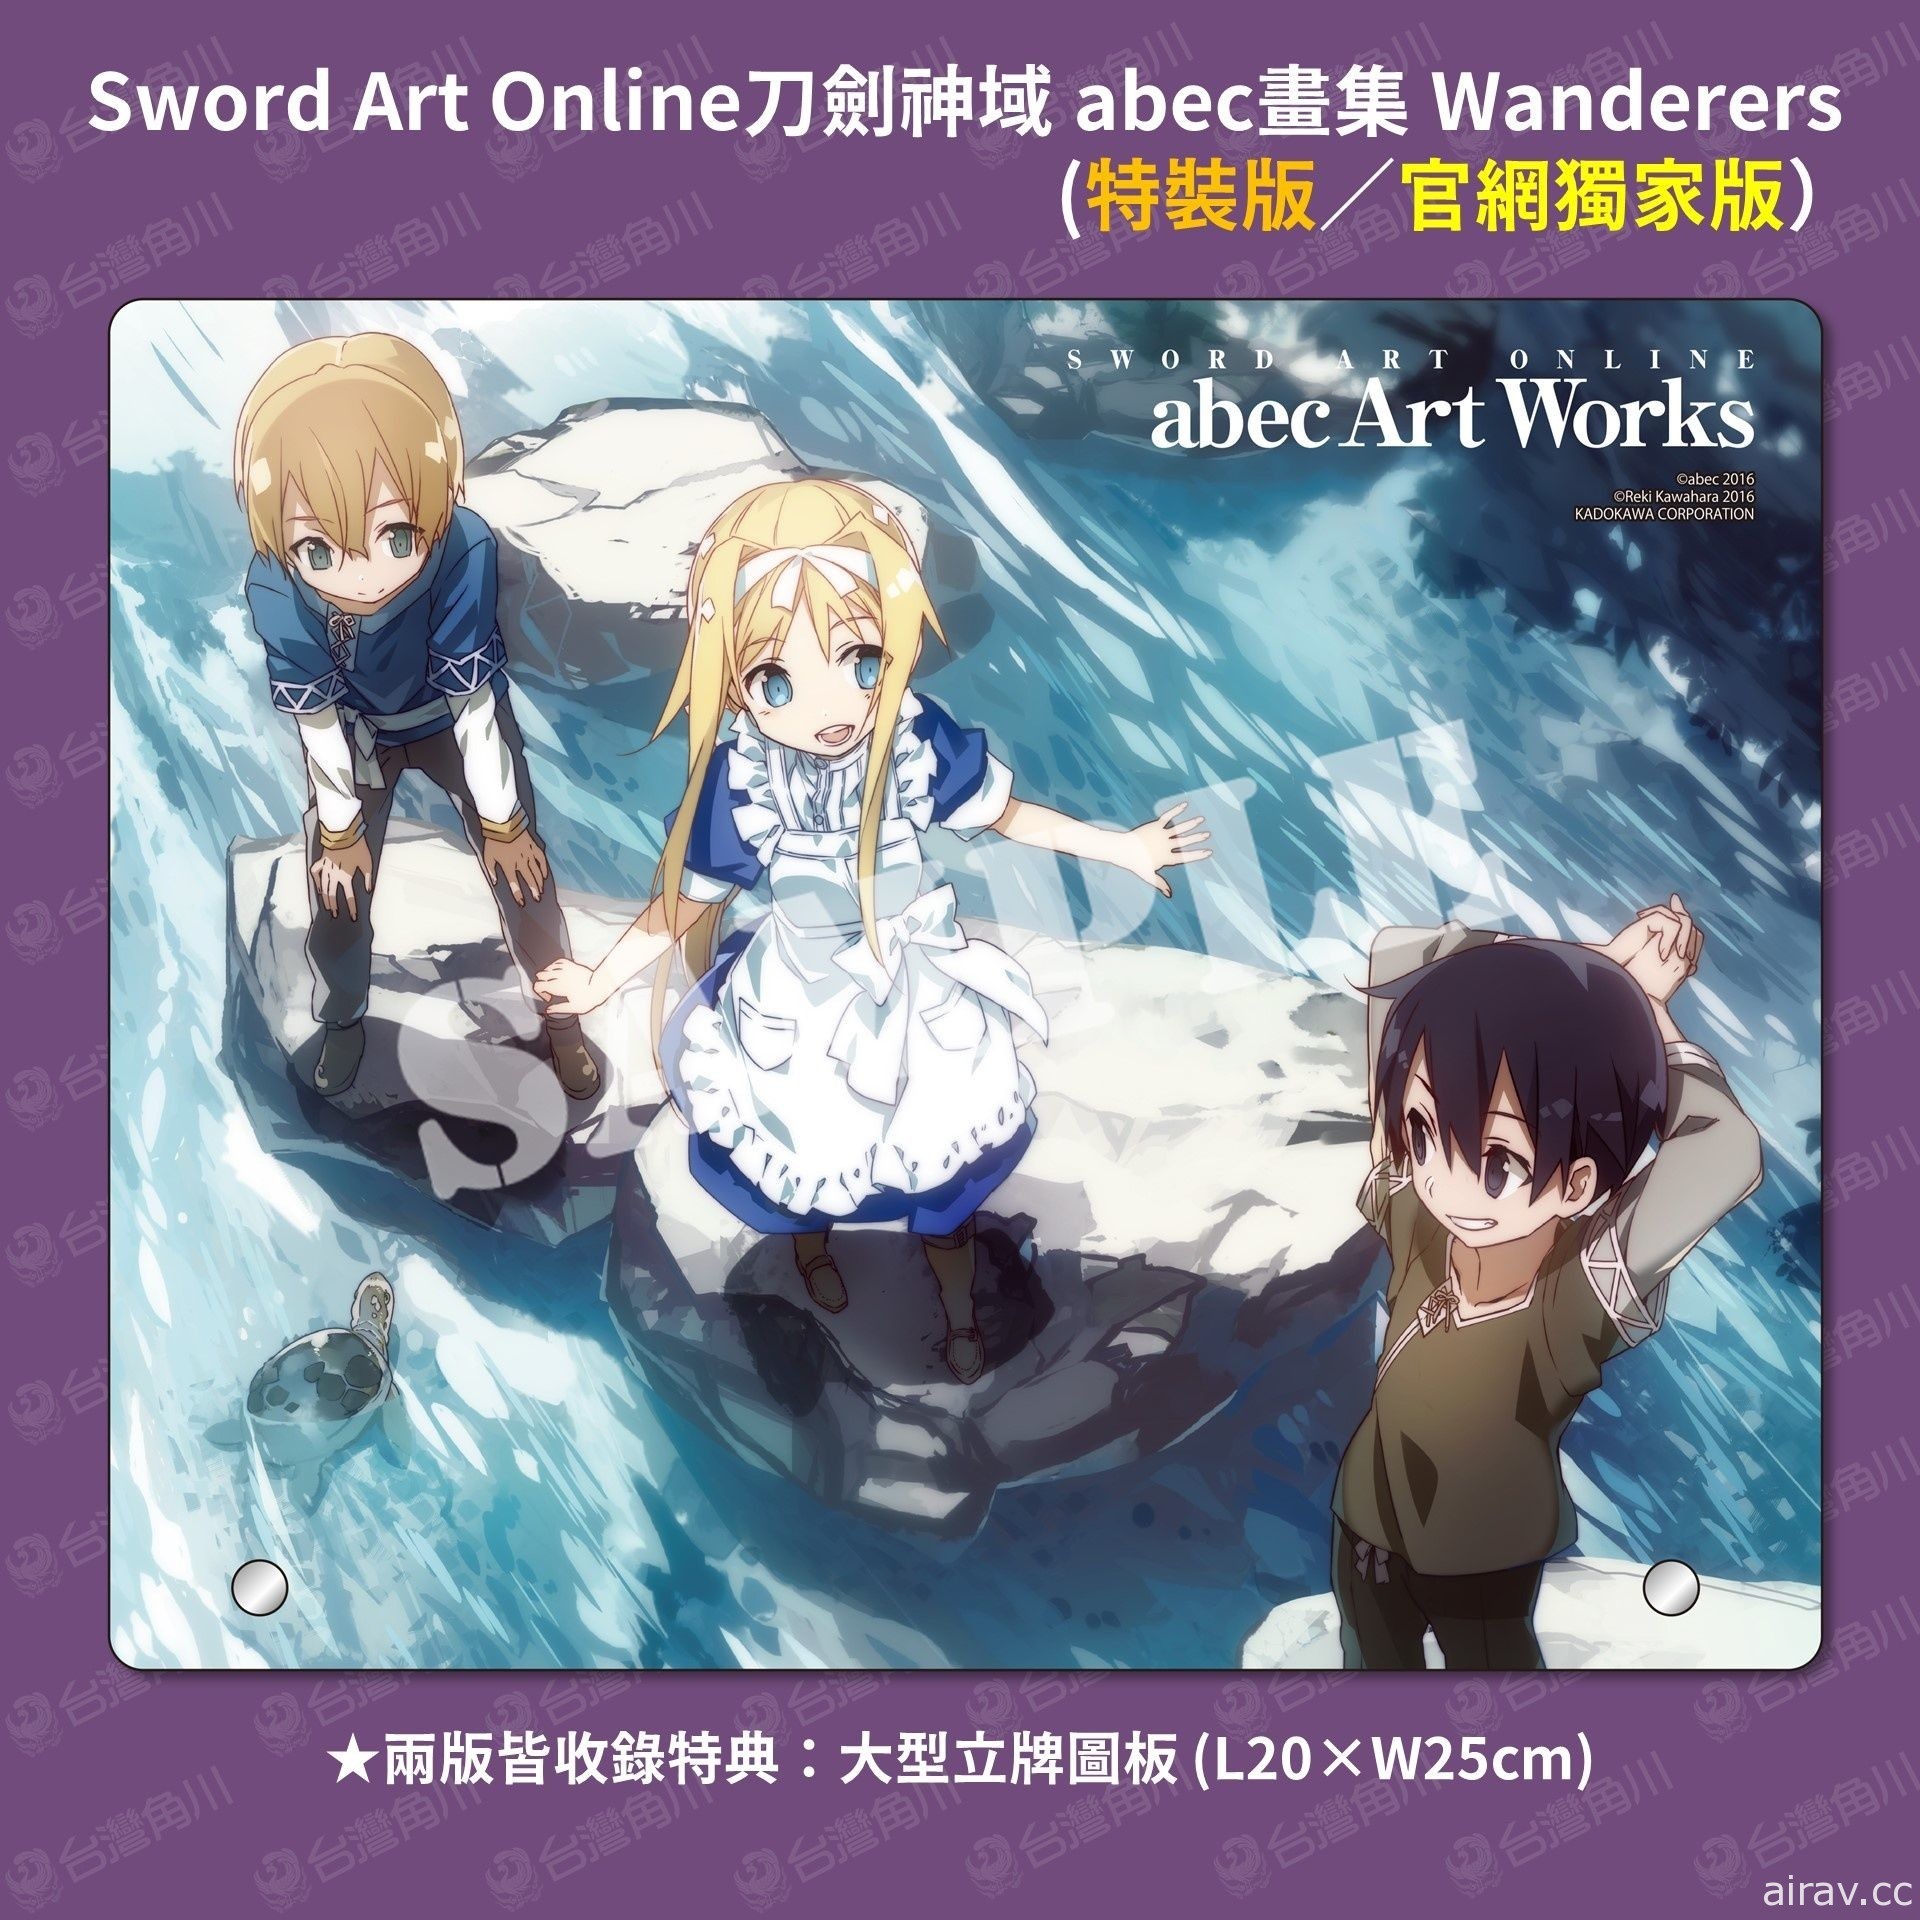 《Sword Art Online 刀剑神域 abec 画集 Wanderers》开放预购 收录特别短篇小说